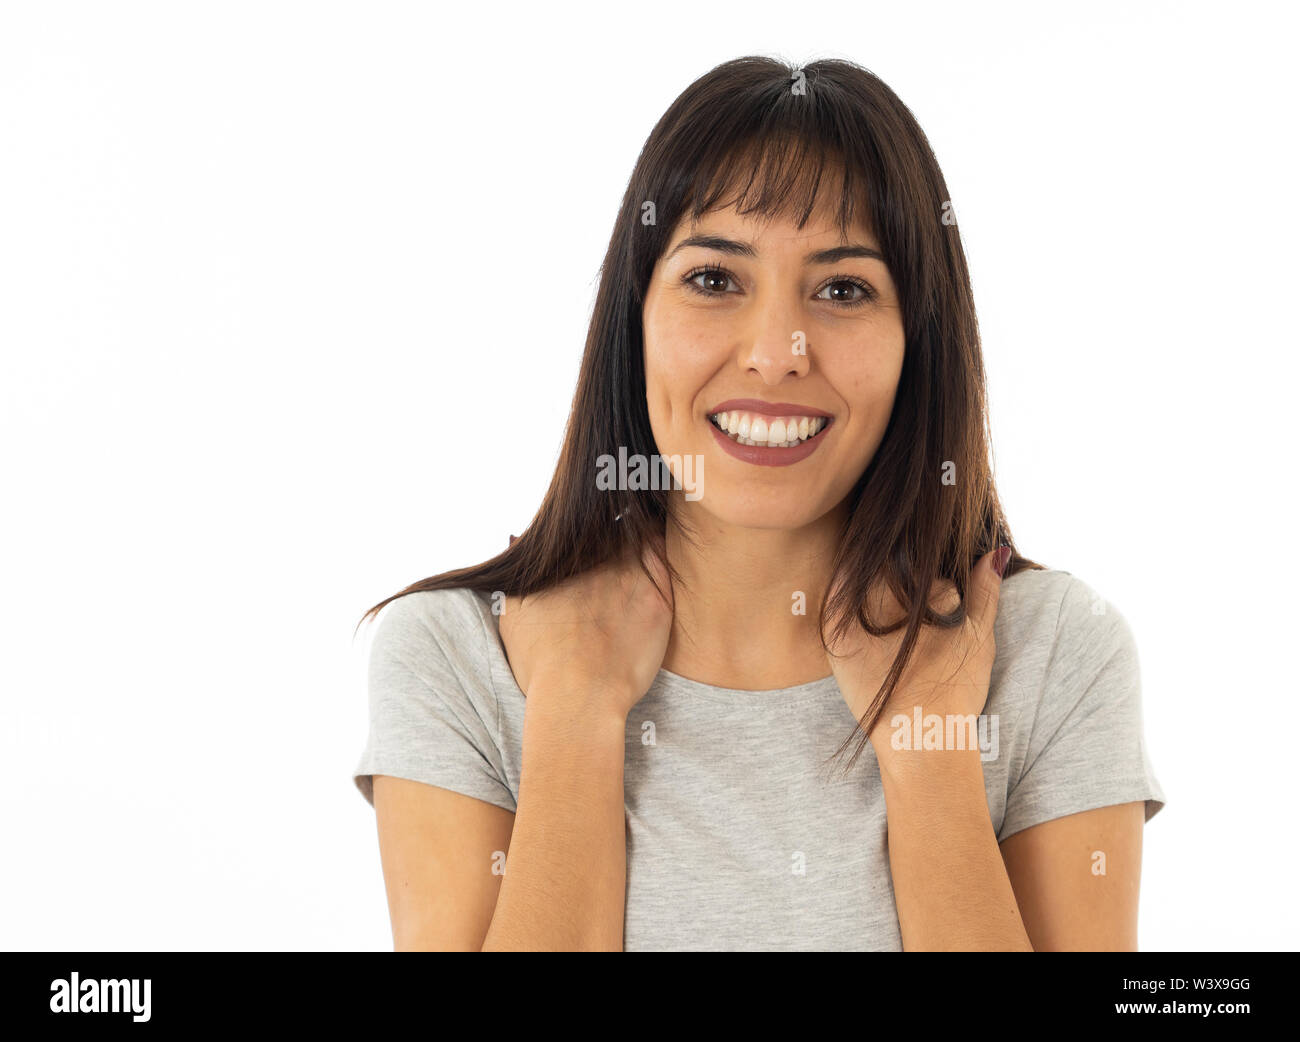 Ritratto di attraente giovane donna caucasica con la faccia felice e bel sorriso. Isolato su sfondo neutro nelle persone, positivo del viso umano expr Foto Stock